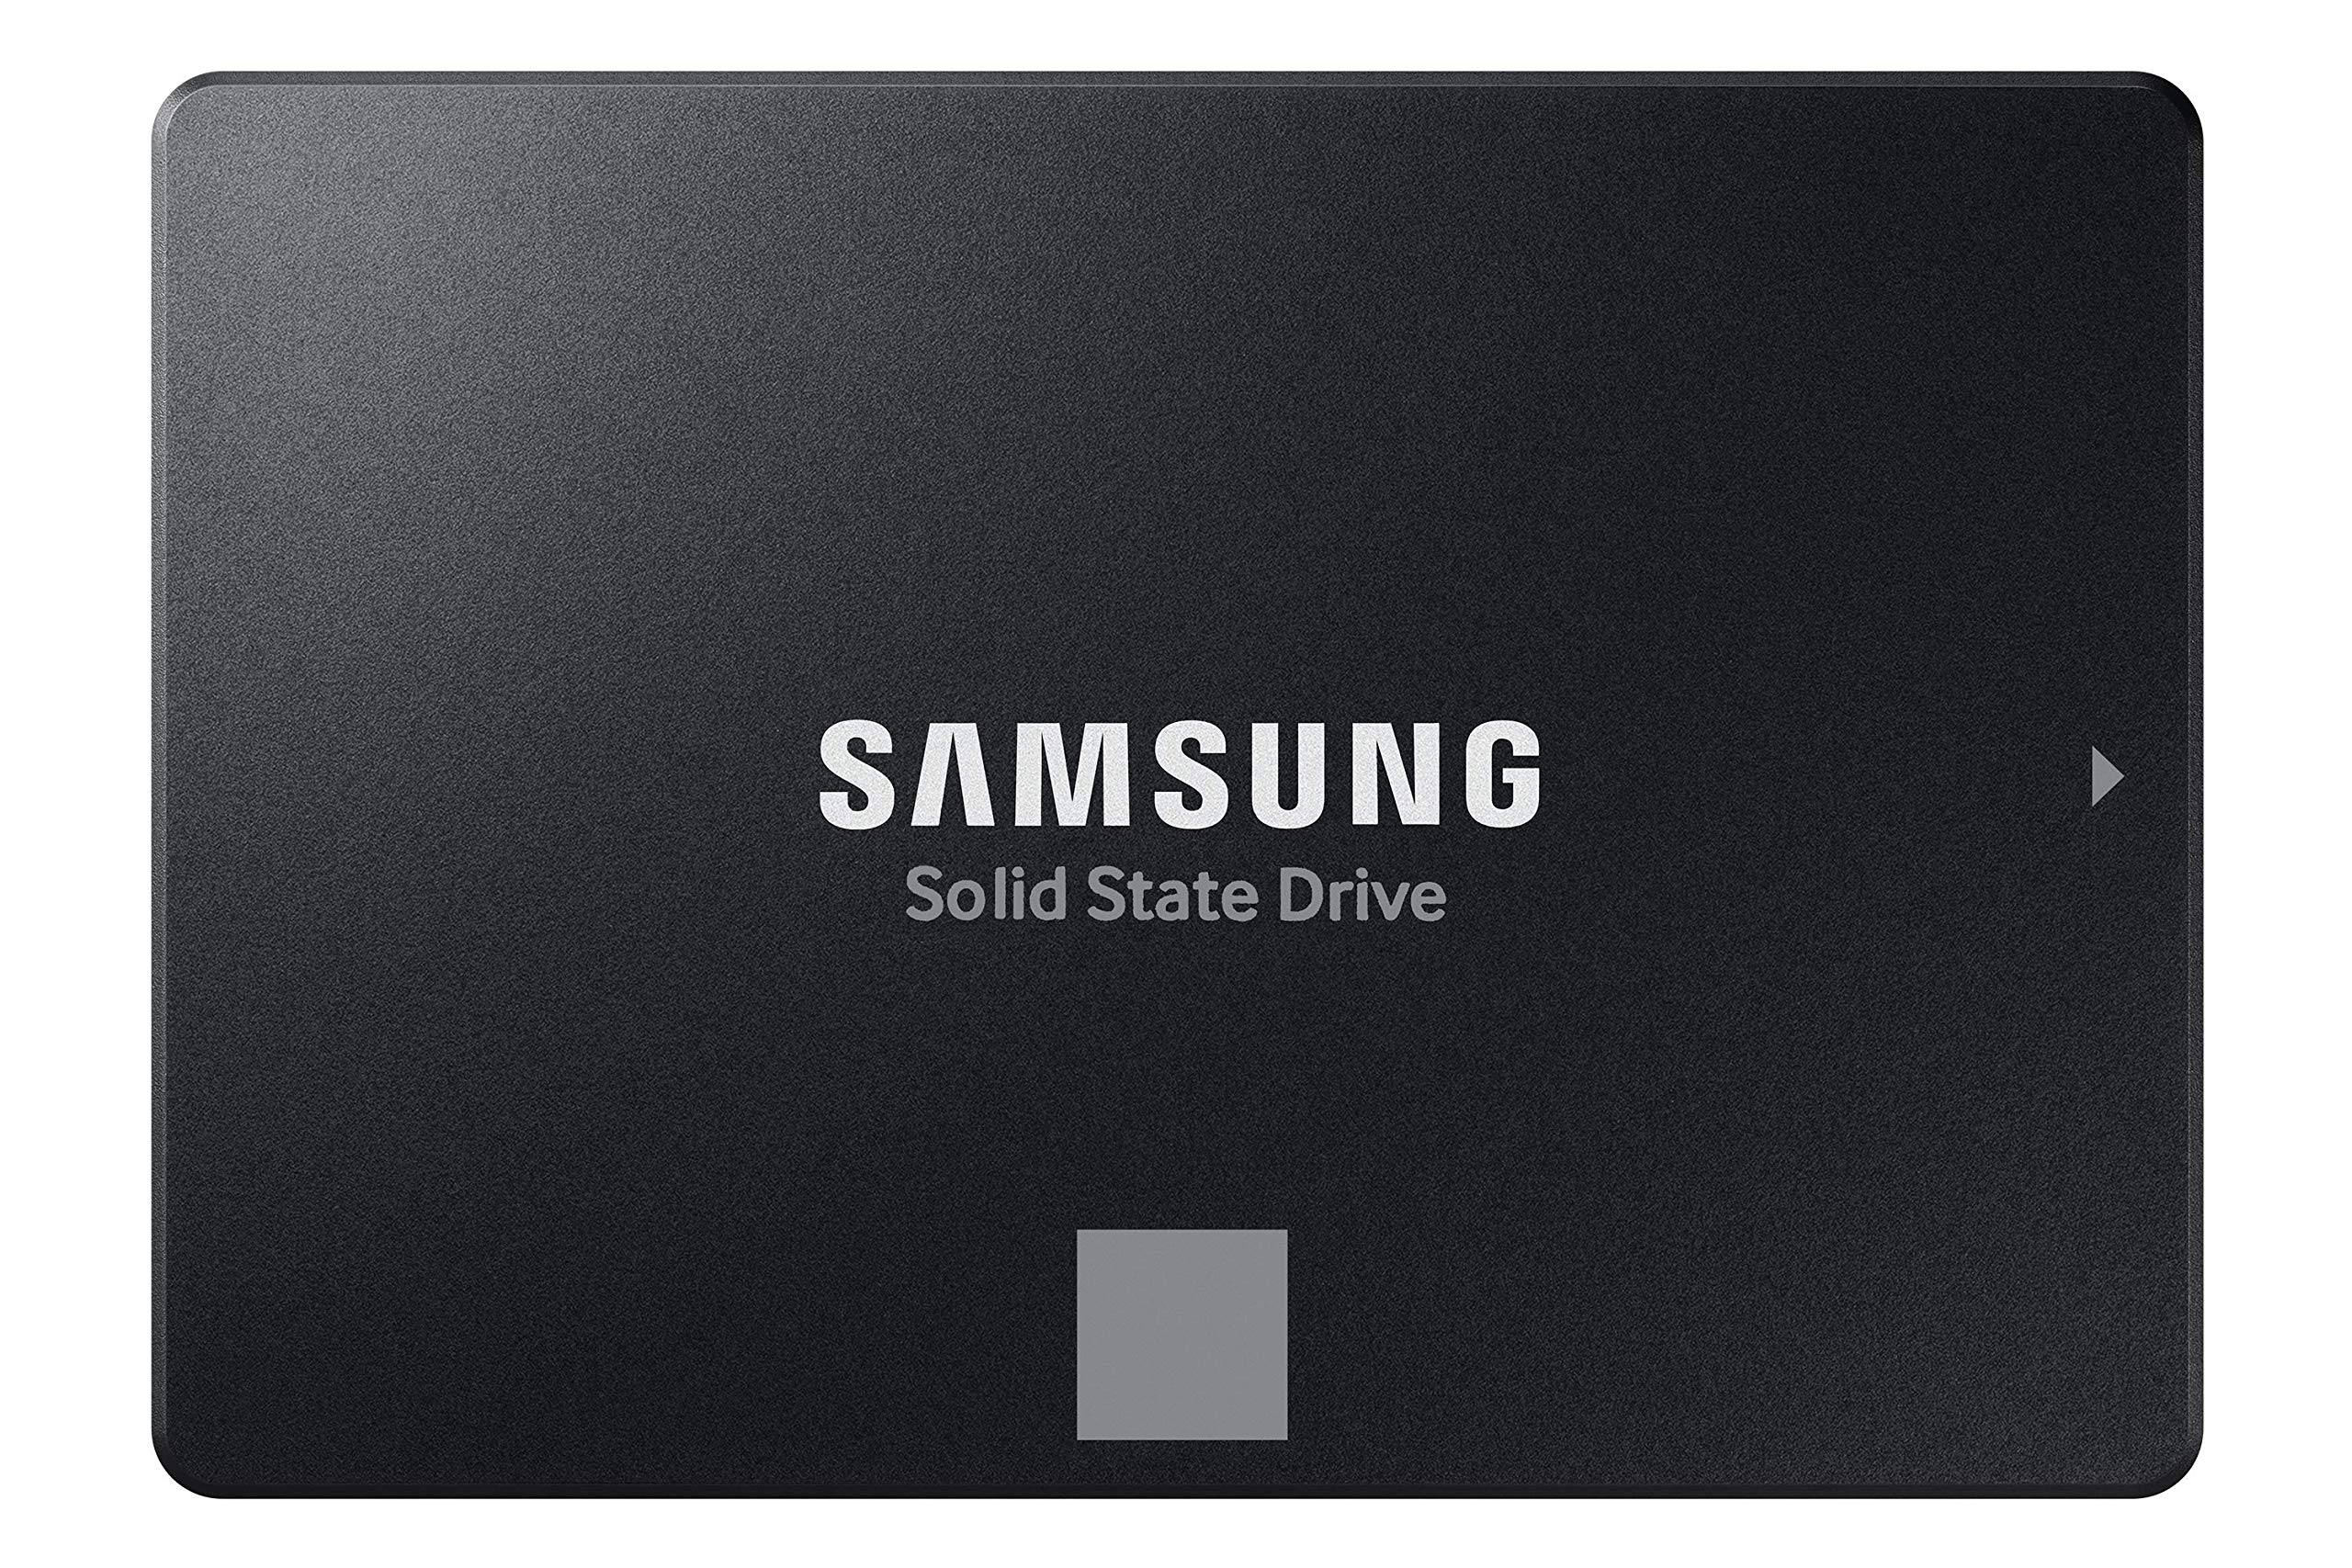 Samsung サムスン 870 EVO 500GB SATA 2.5インチ 内蔵型 ソリッドステートドライブ SSD MZ-77E500